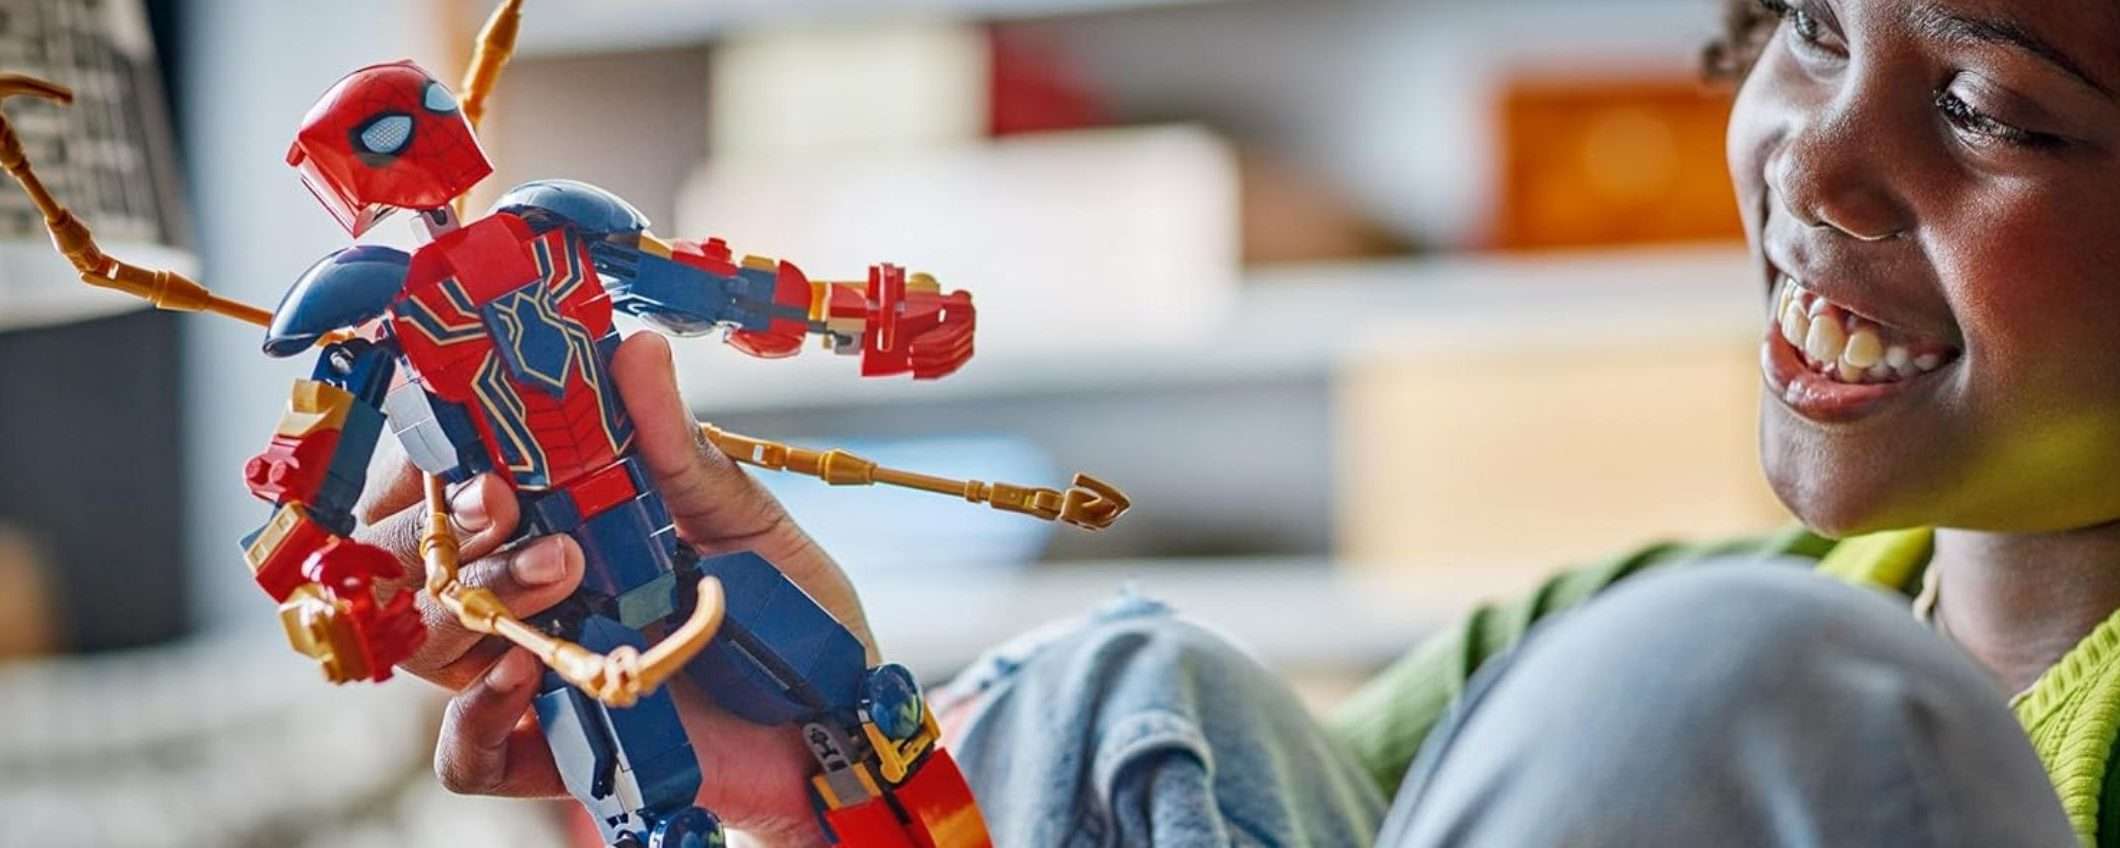 Il nuovo LEGO Iron Spider-Man è disponibile su Amazon: fantastica IDEA REGALO